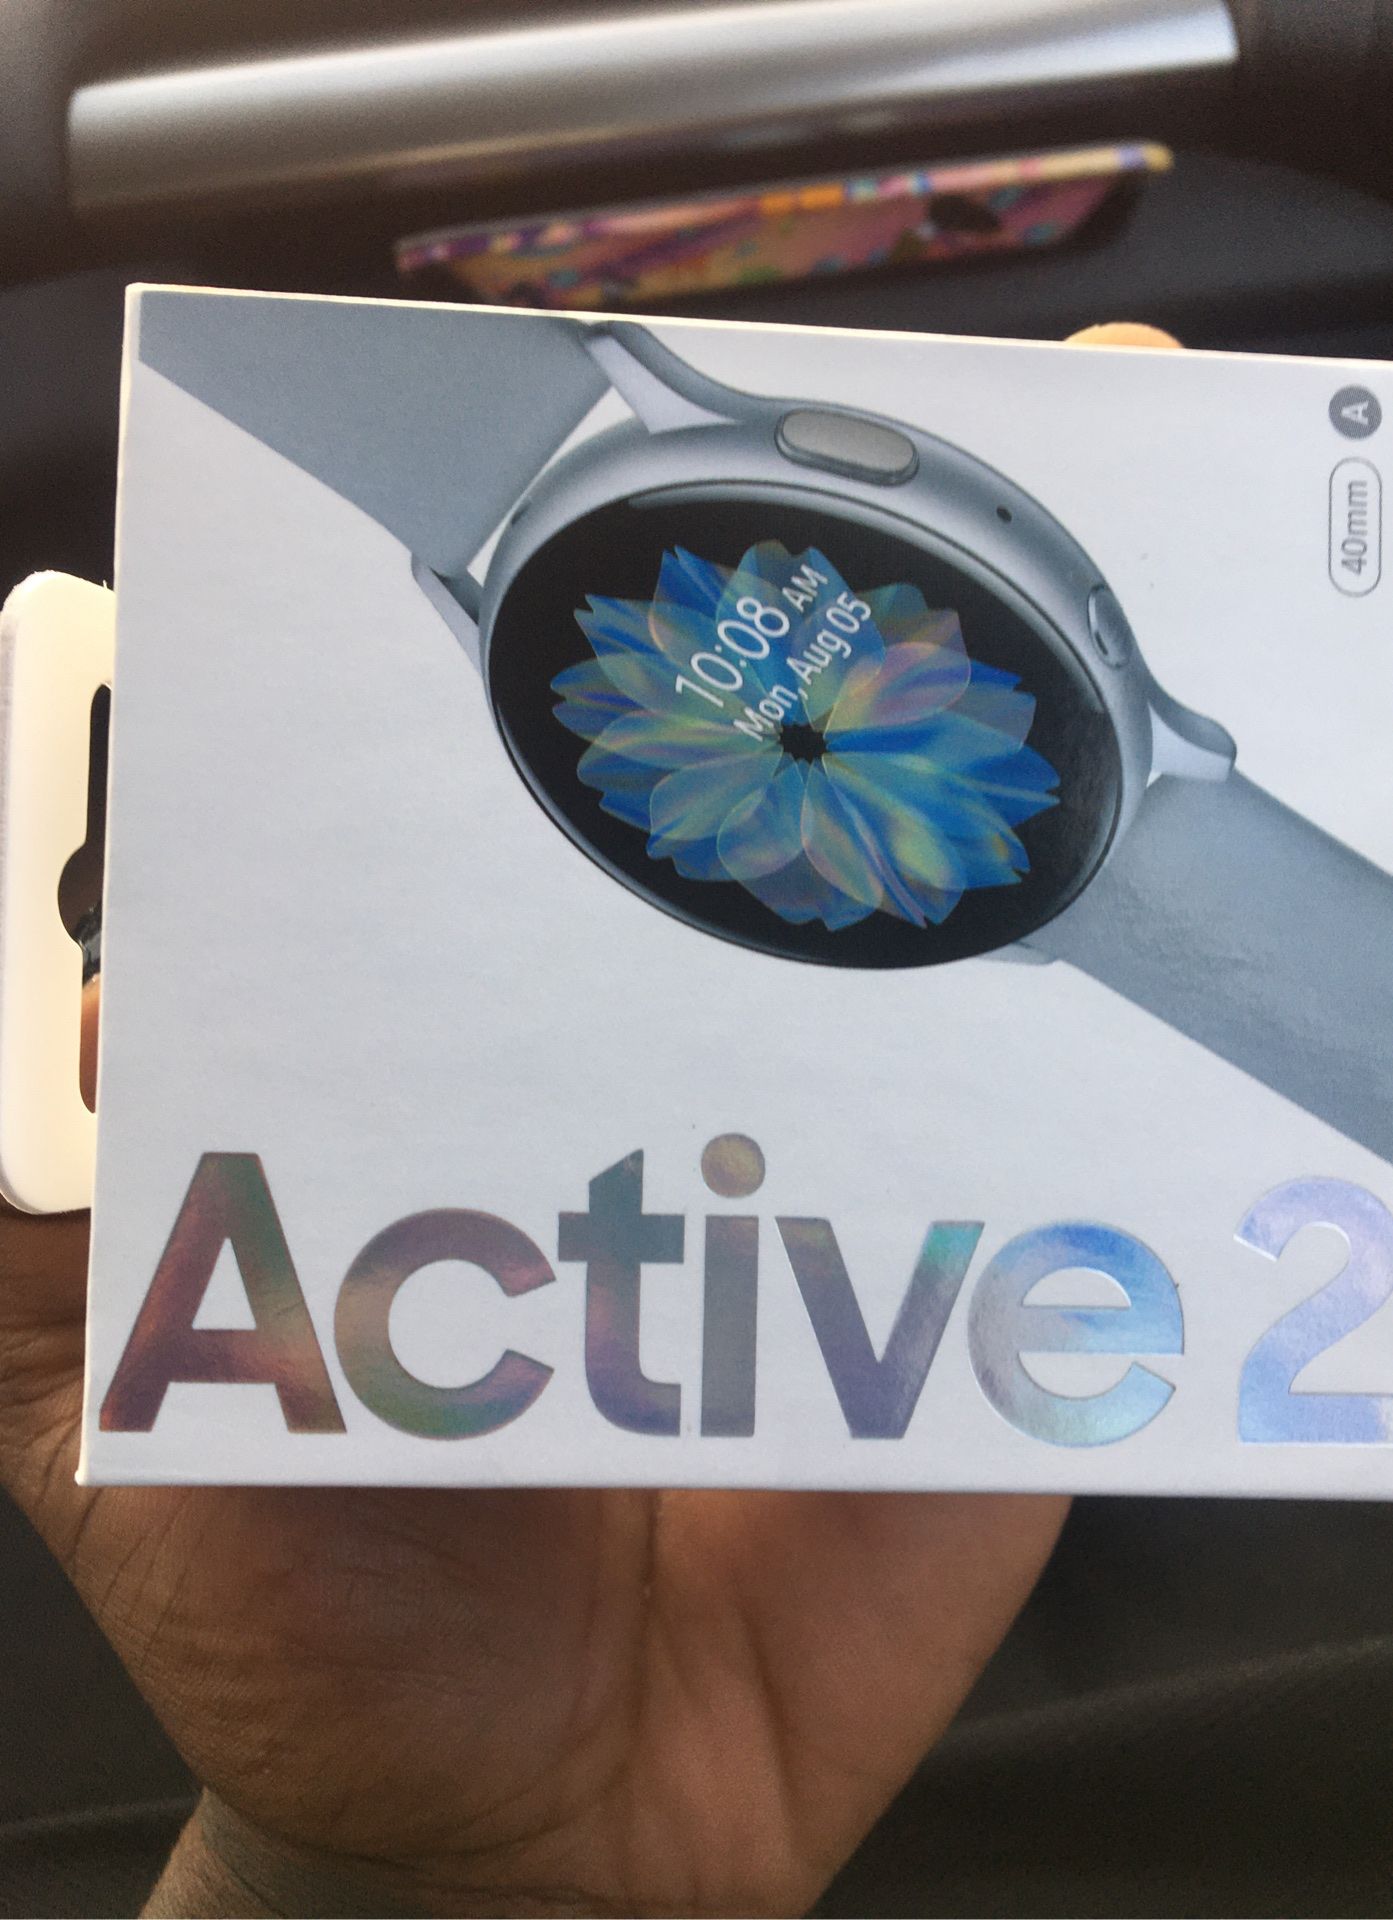 Samsung Watch (Active 2) (new)